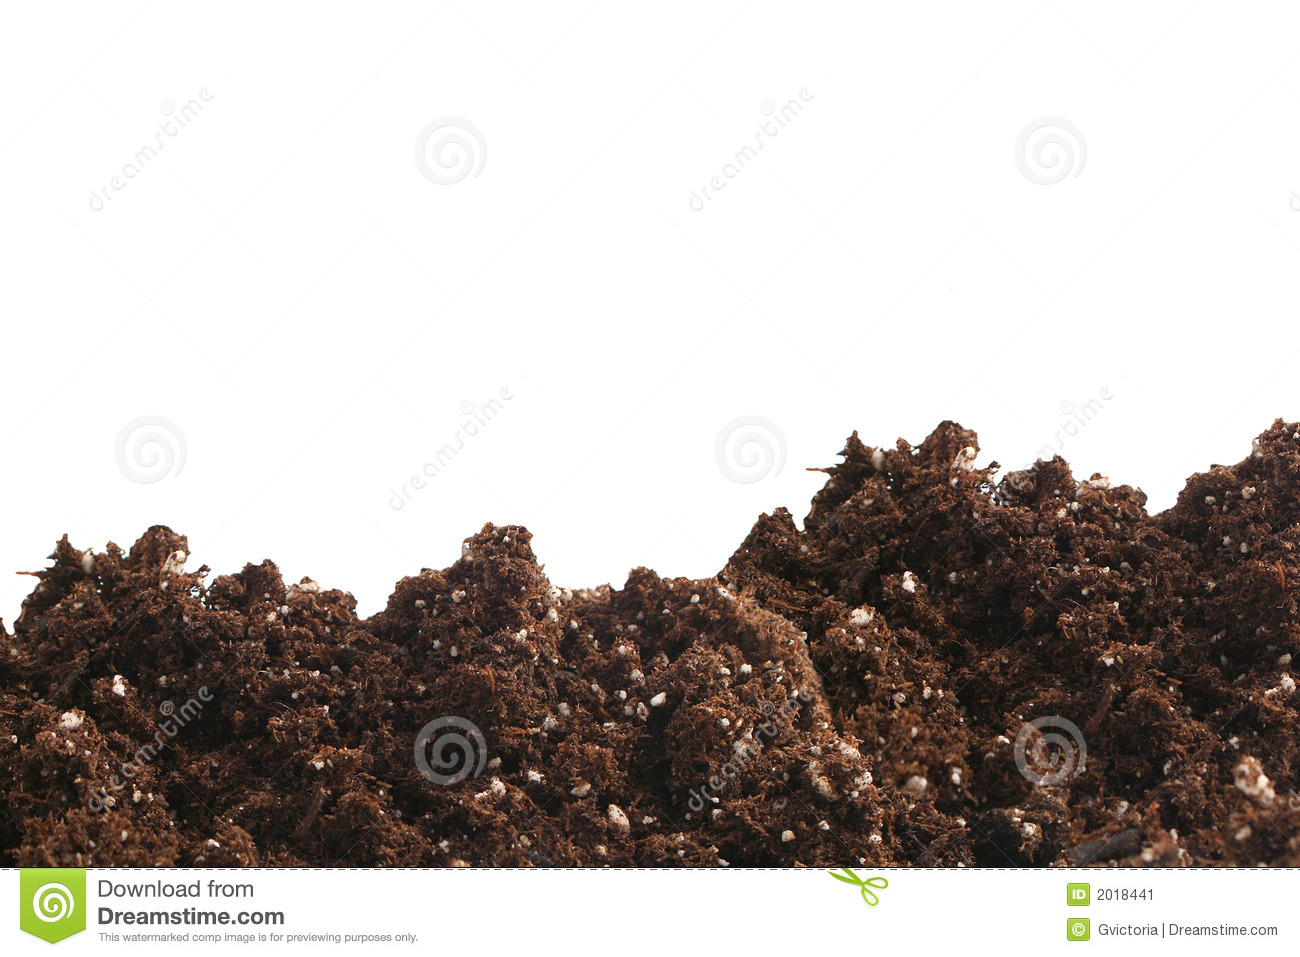 Garden Dirt With Fertilizer On A White Background